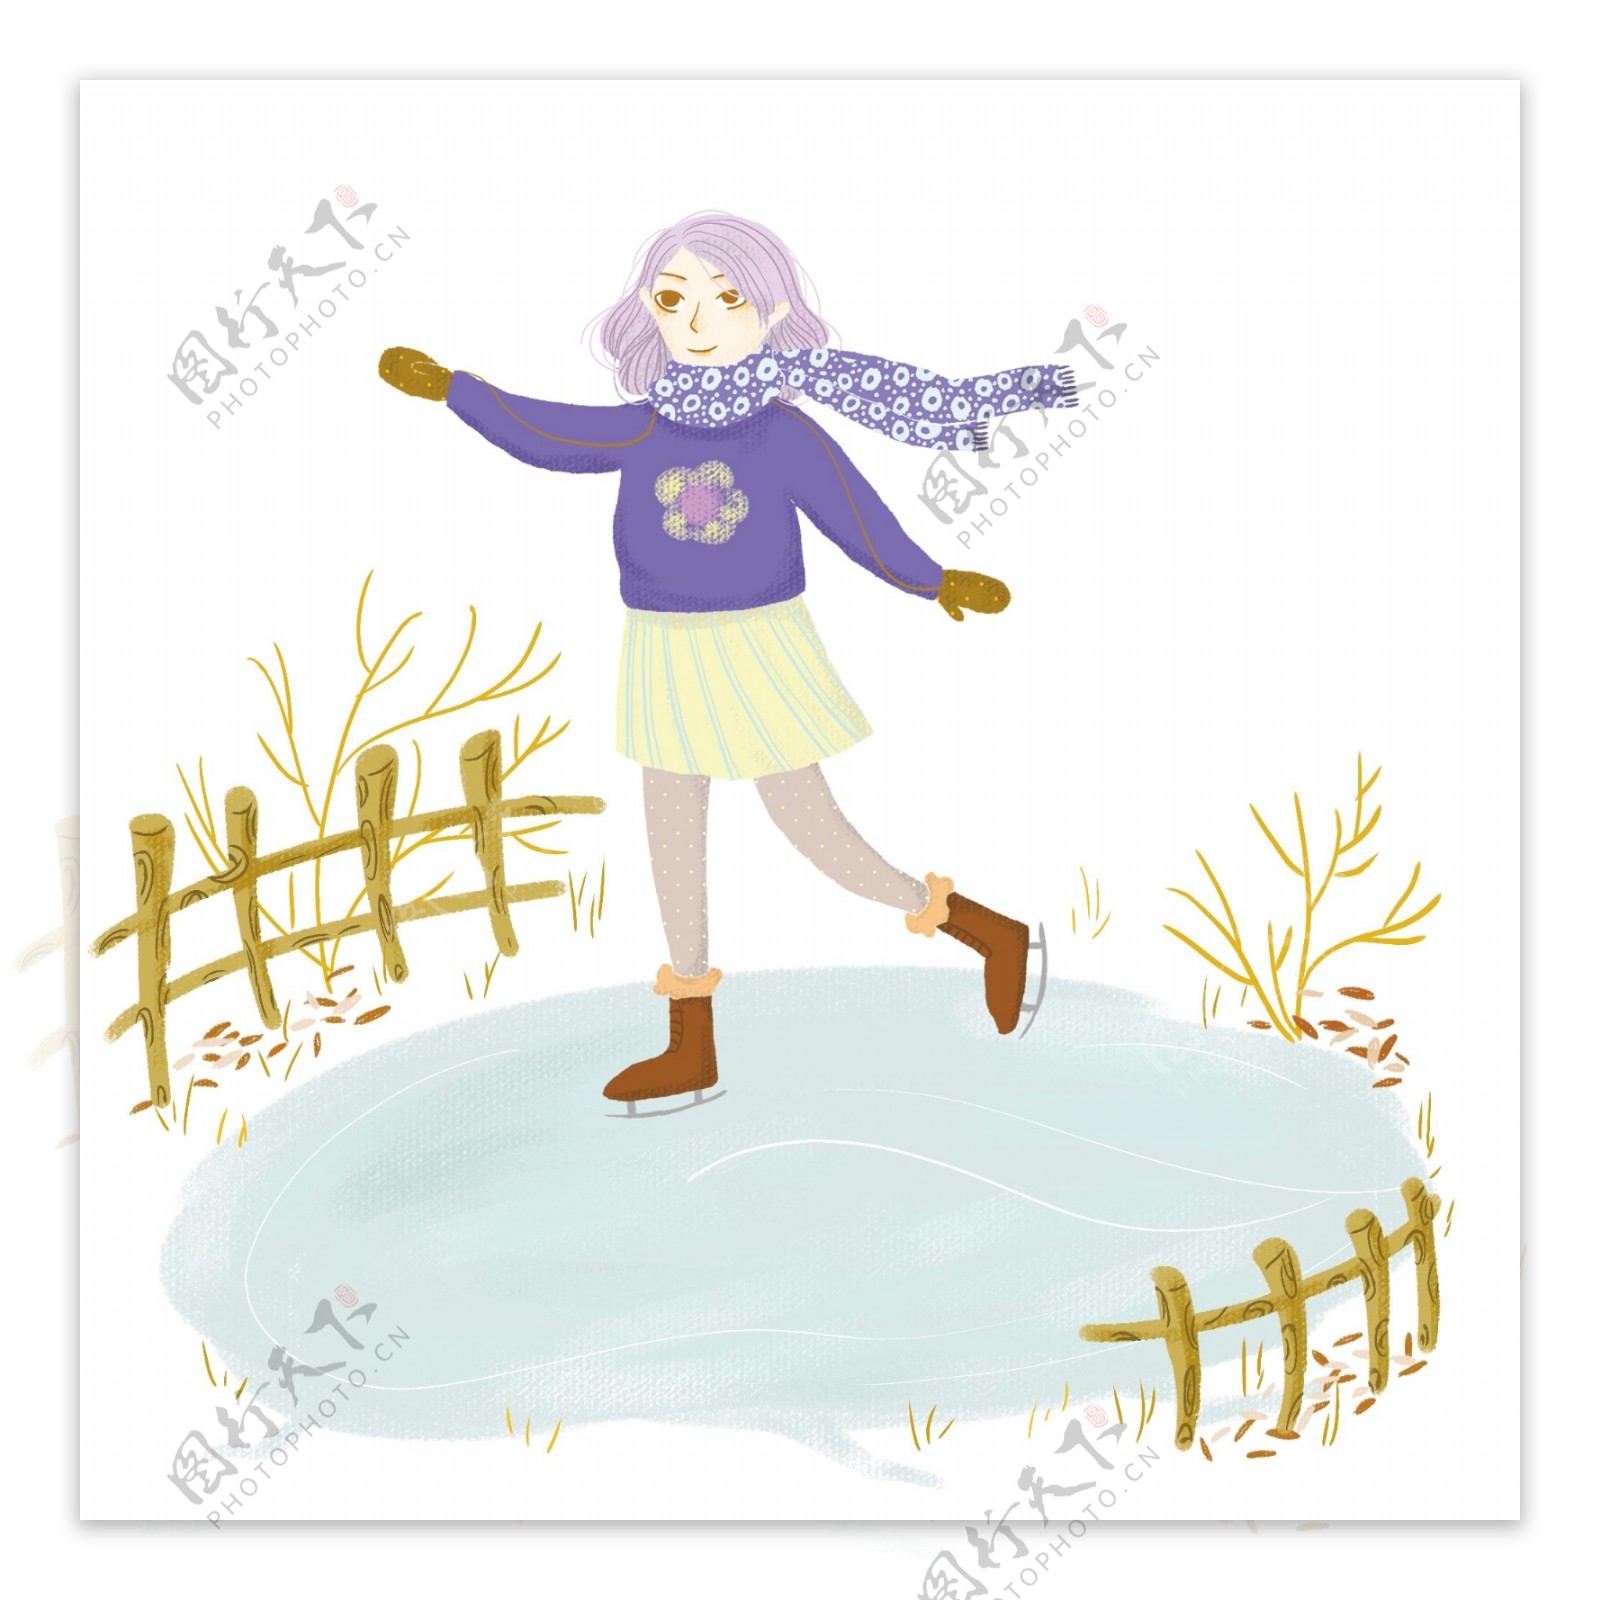 冬季冬天节气冬装卡通紫衣可爱小姑娘插画